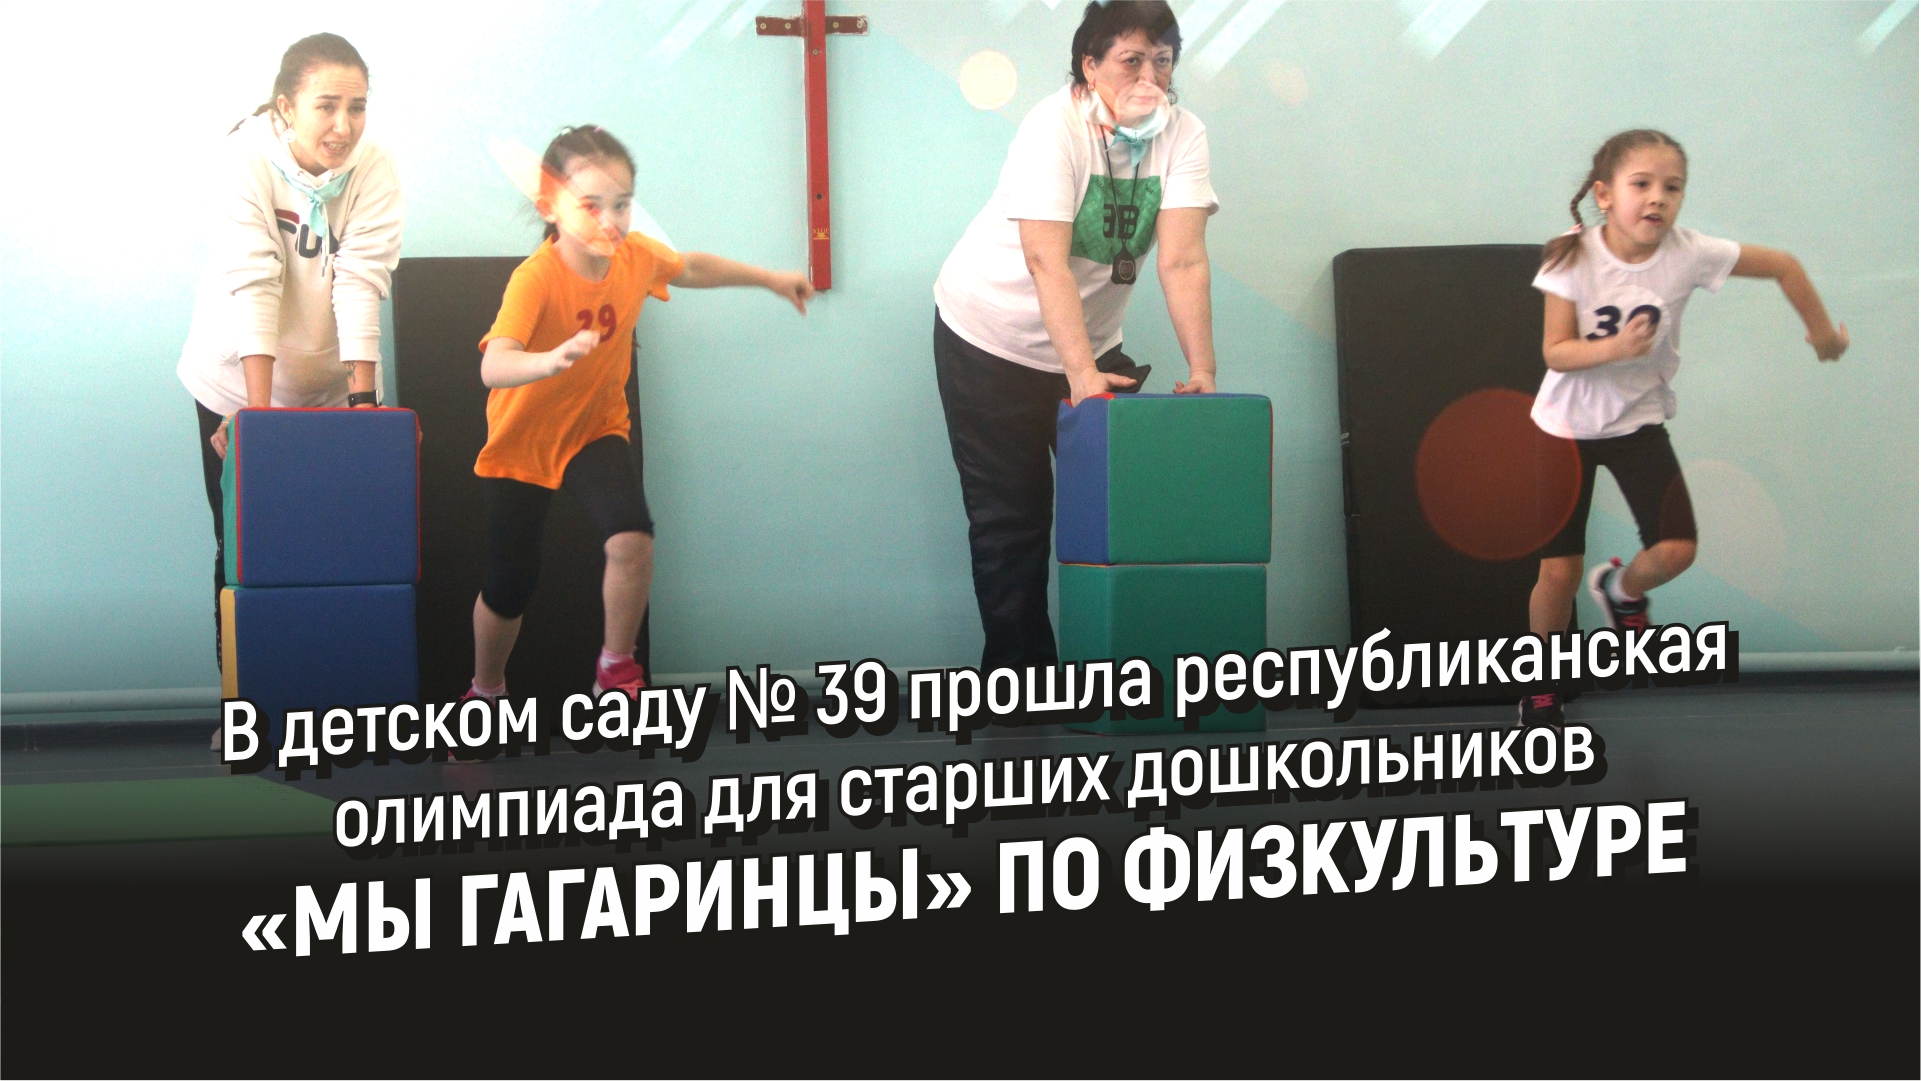 В детском саду № 39 прошла олимпиада для старших дошкольников «Мы гагаринцы» по физкультуре